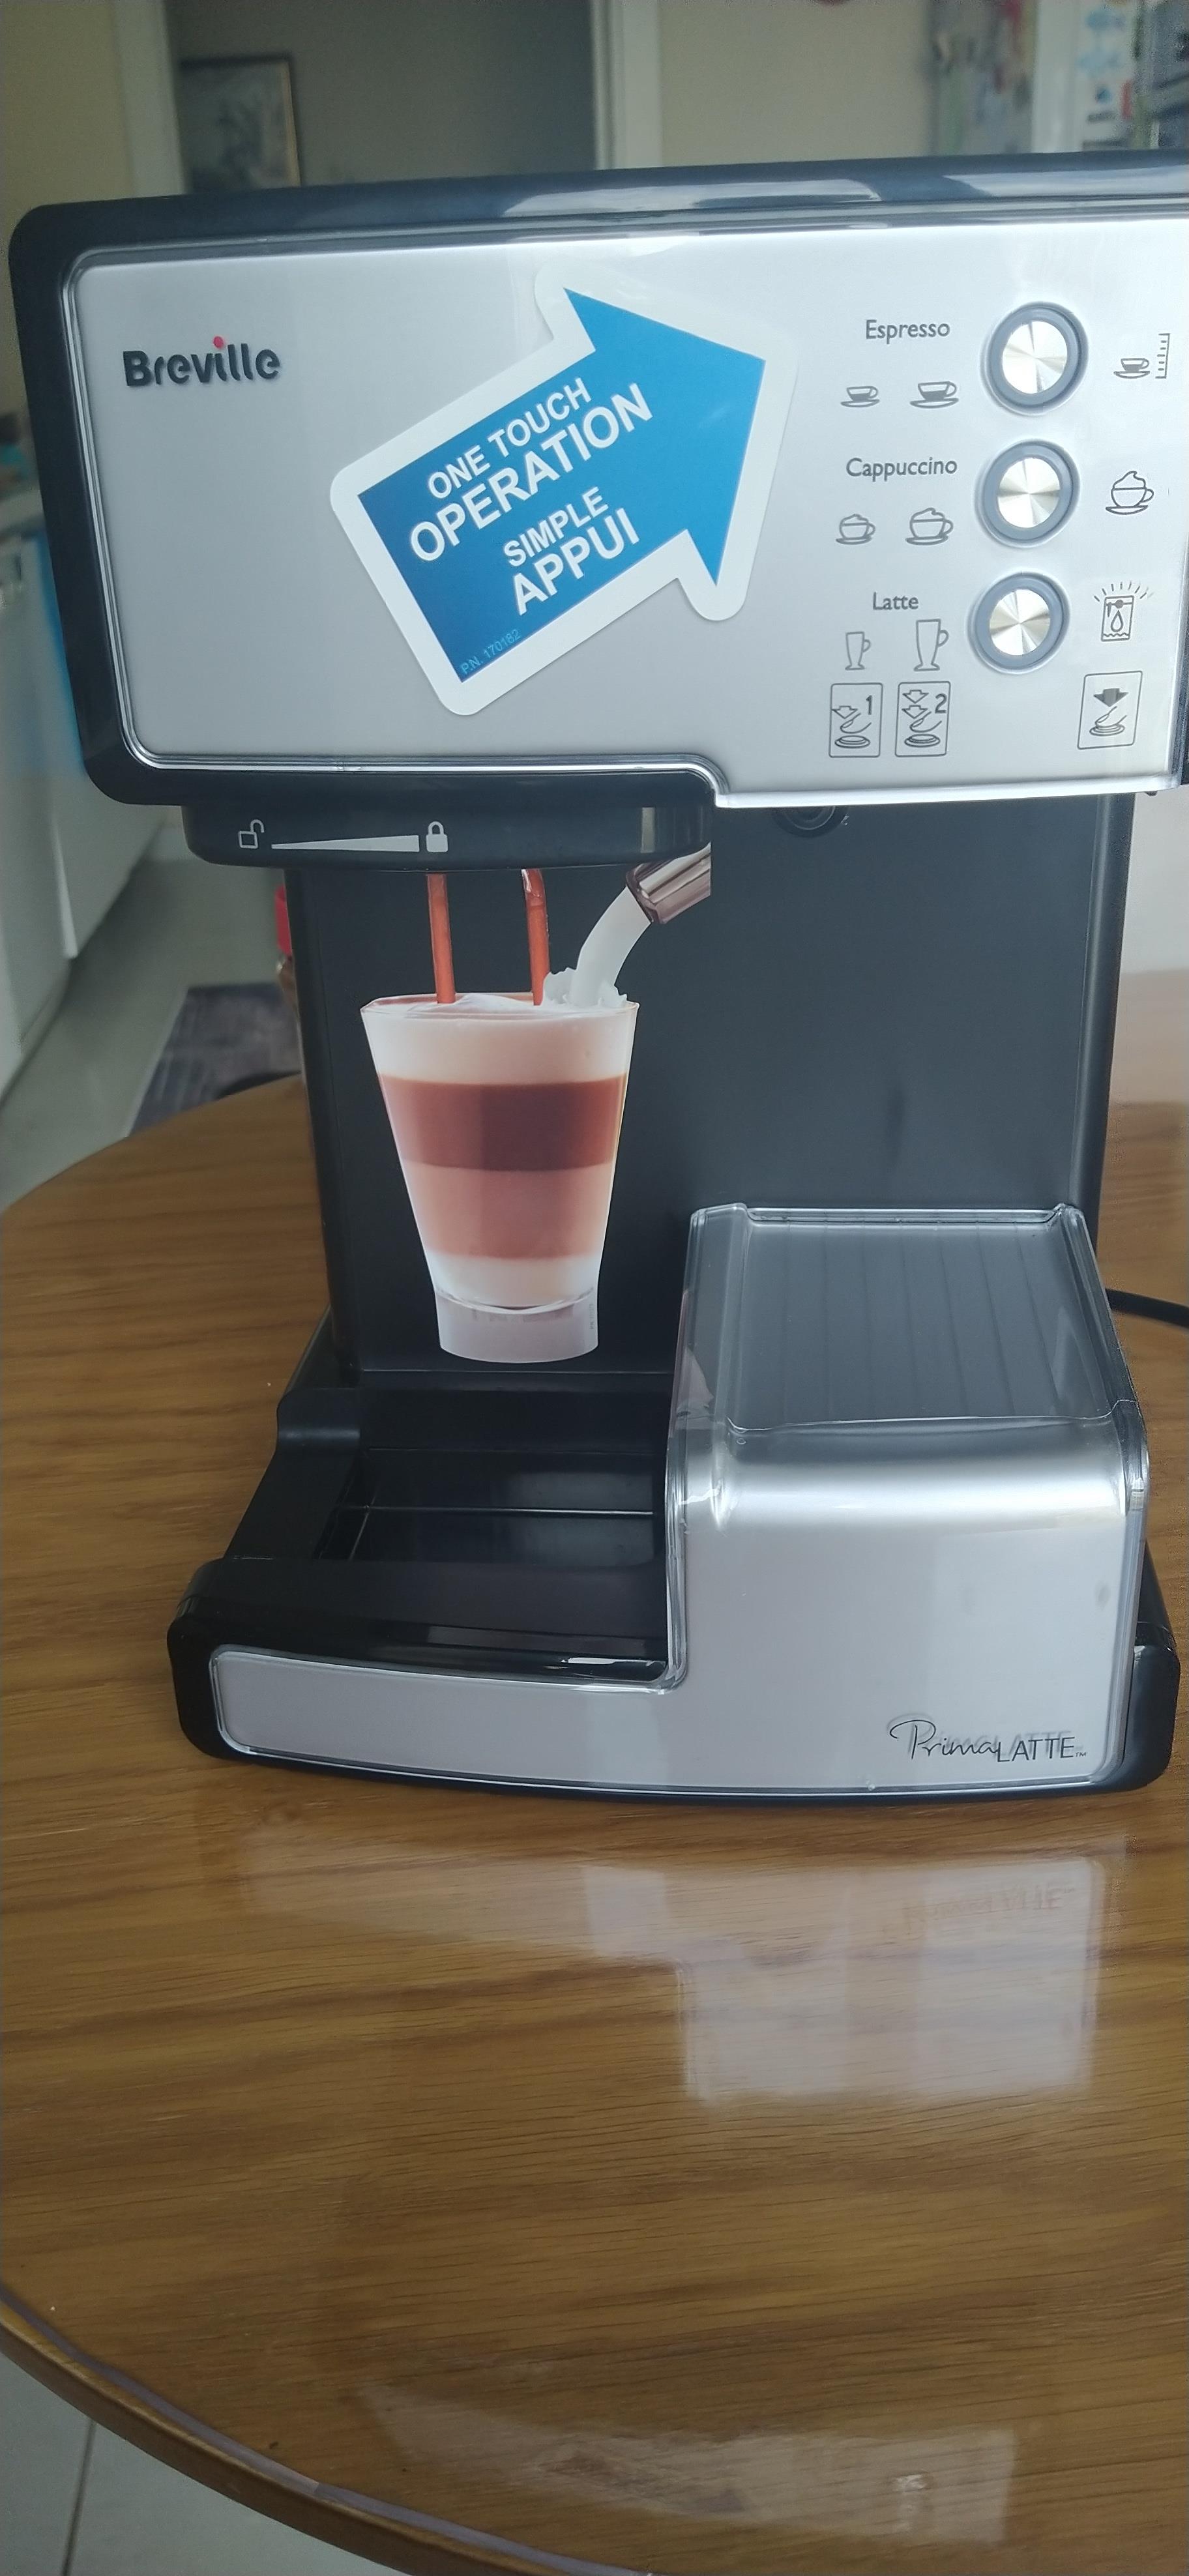 satılık Breville Vcf045 X Prima Latte Kahve Makinesi 1700 tl | DonanımHaber  Forum